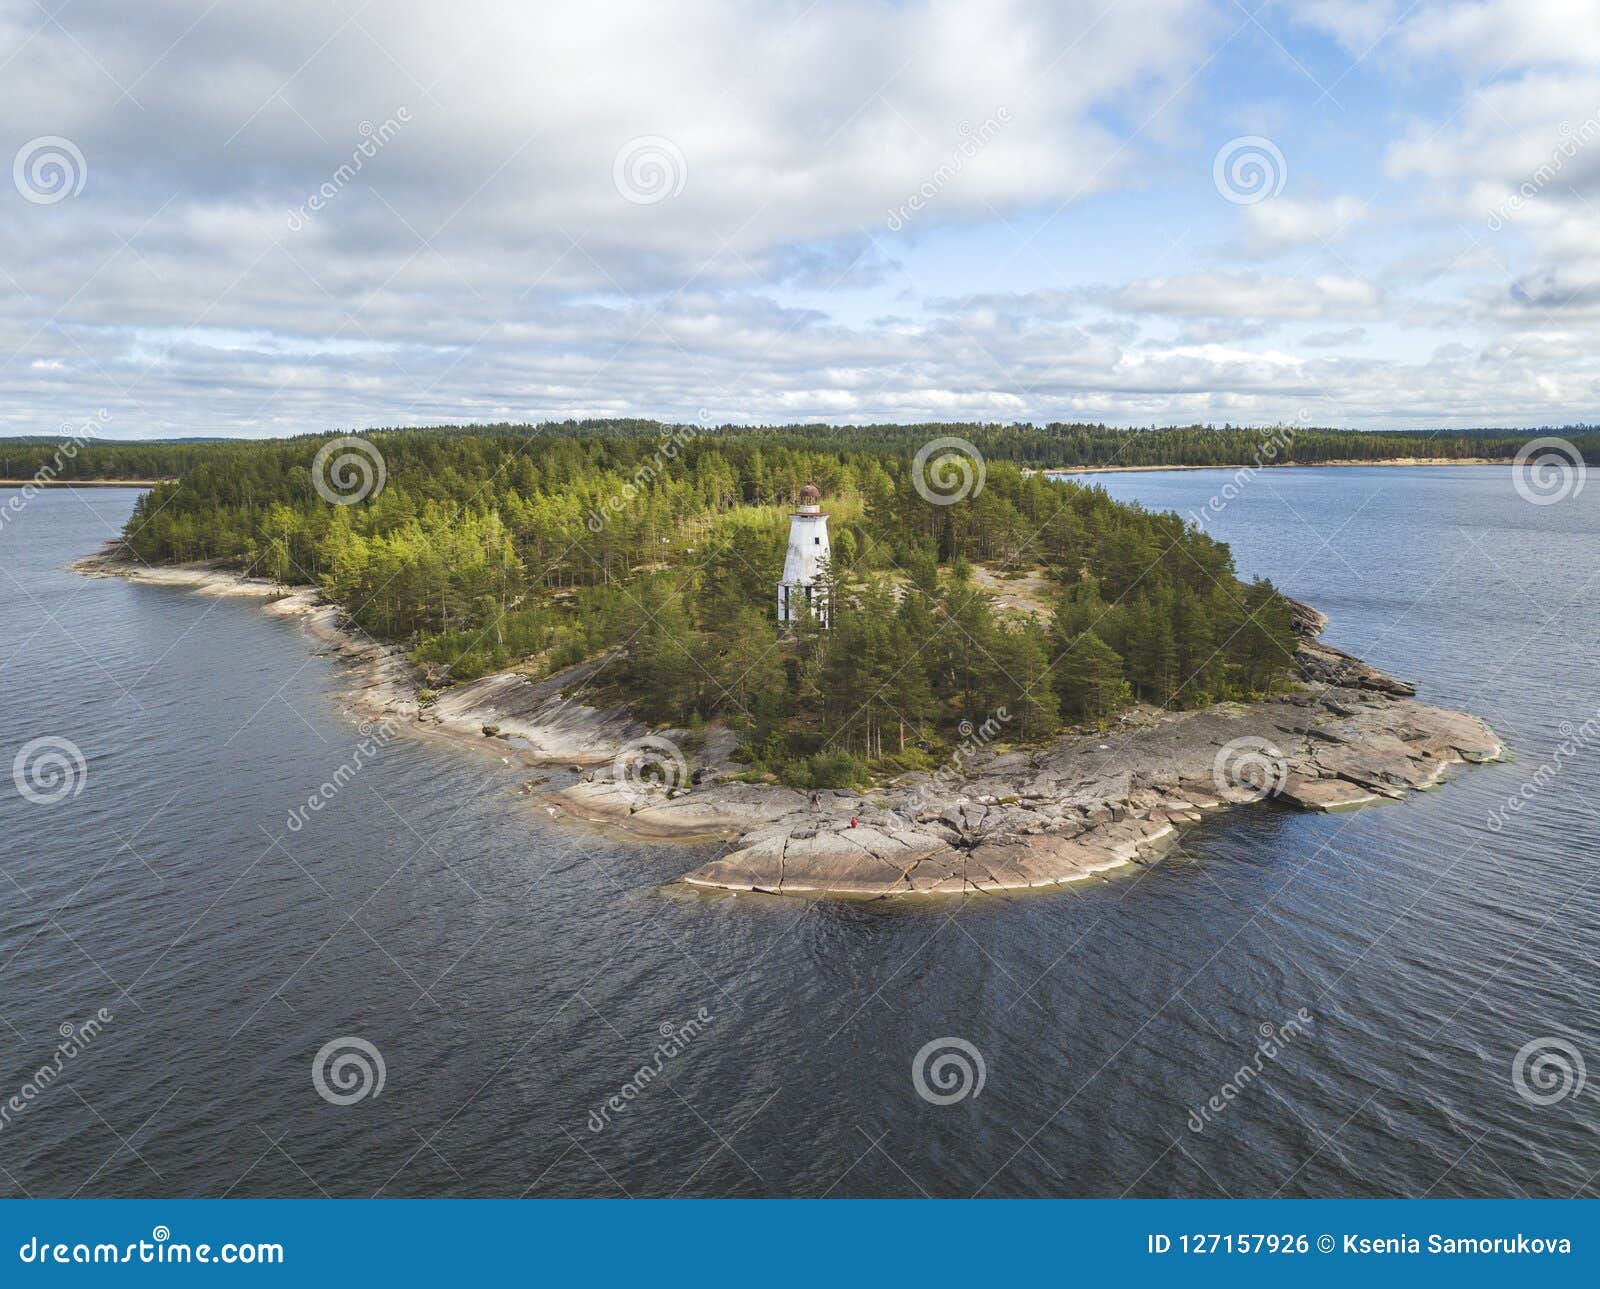 lighthouse, cape besov nos, lake onega shore, karelia